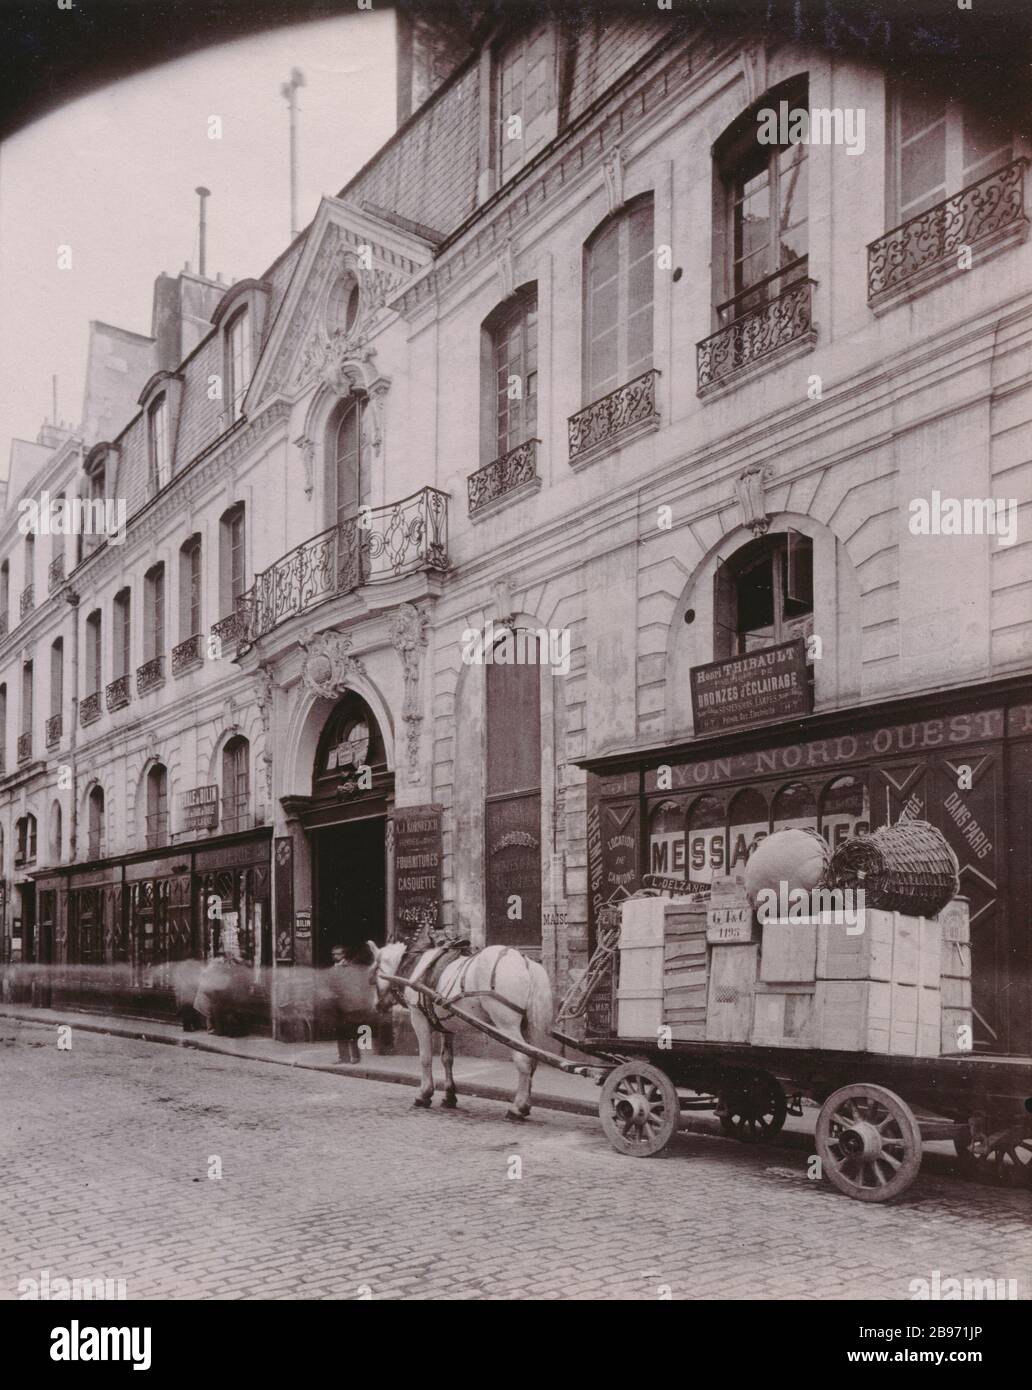 HOTEL D'ALBRET Hôtel d'Albret, 31 rue des Francs-Bourgeois. Parigi (IVème arr.), 1898. Photographie d'Eugène Atget (1857-1927). Parigi, musée Carnavalet. Foto Stock